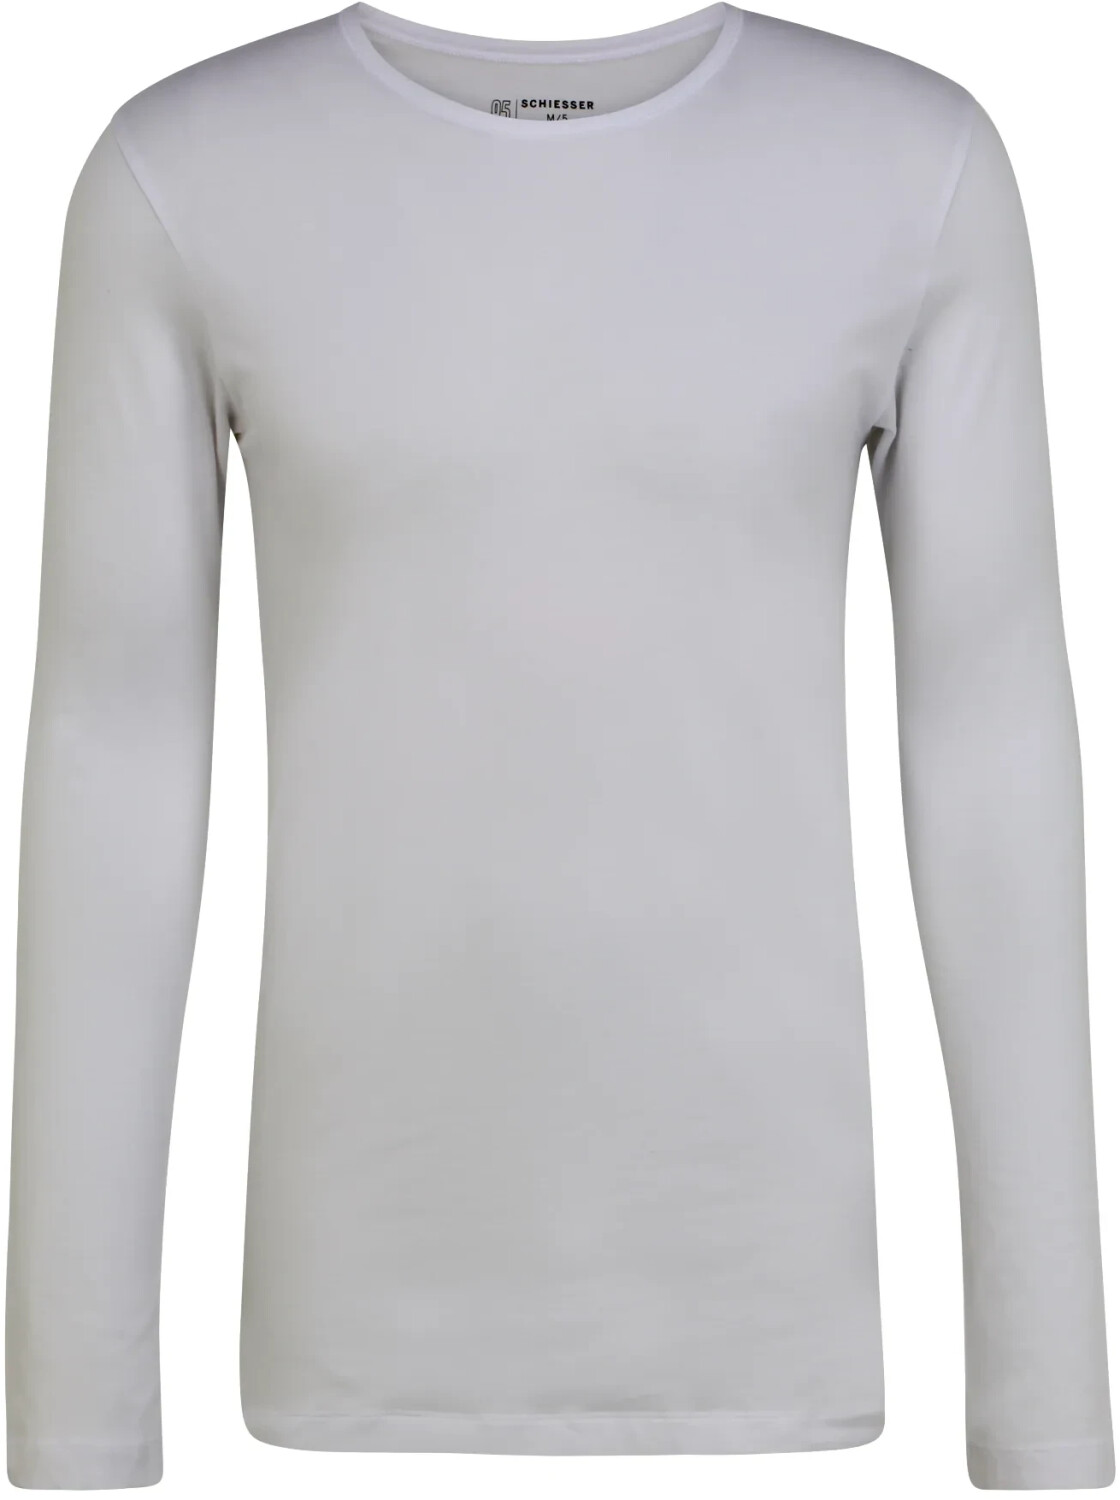 Rundhals 20,99 Organic Preisvergleich Cotton Schiesser ab langarm | Shirt 95/5 (173812) € bei